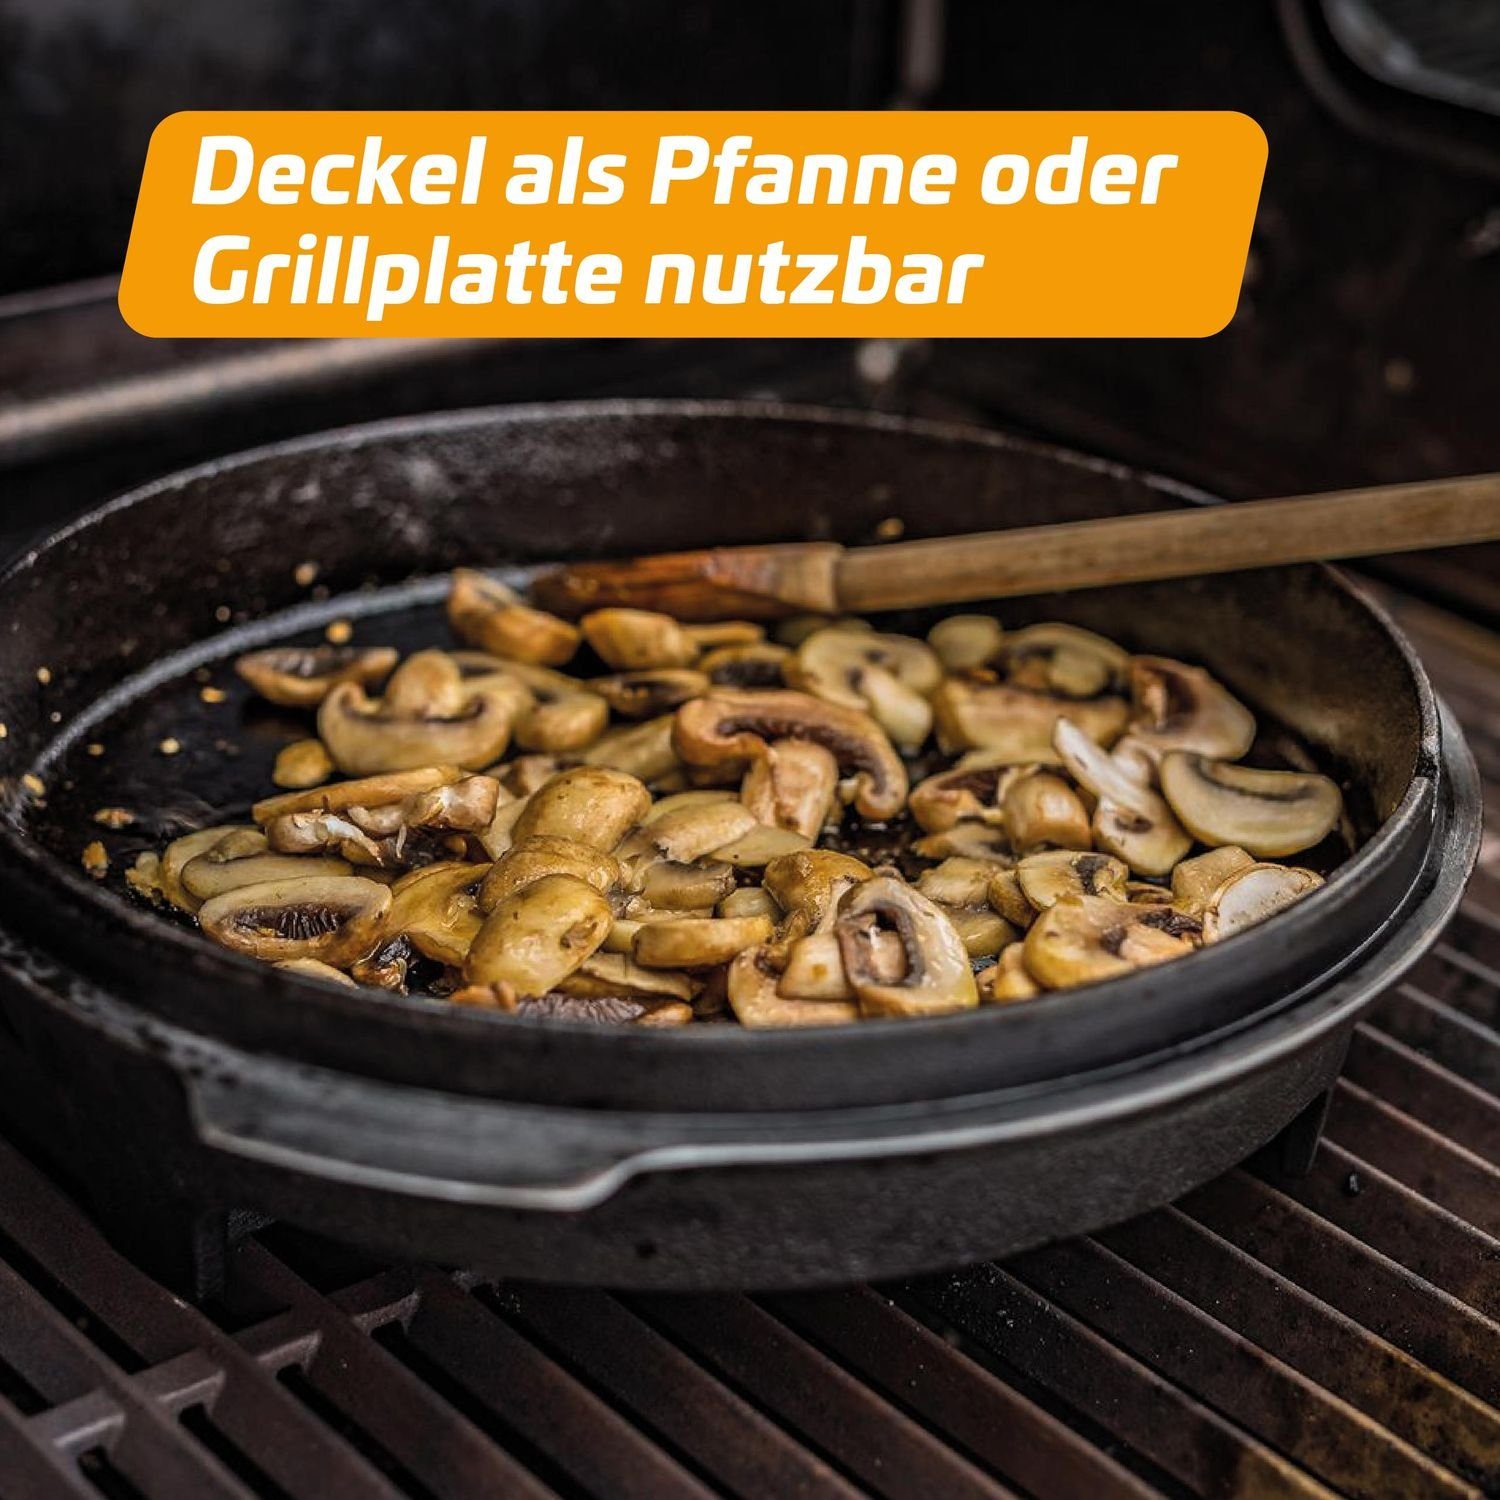 Dutch Grillfürst Bratentopf - Edition Sonderedition Oven BBQ Klaus DO9 Grillfürst Grillt